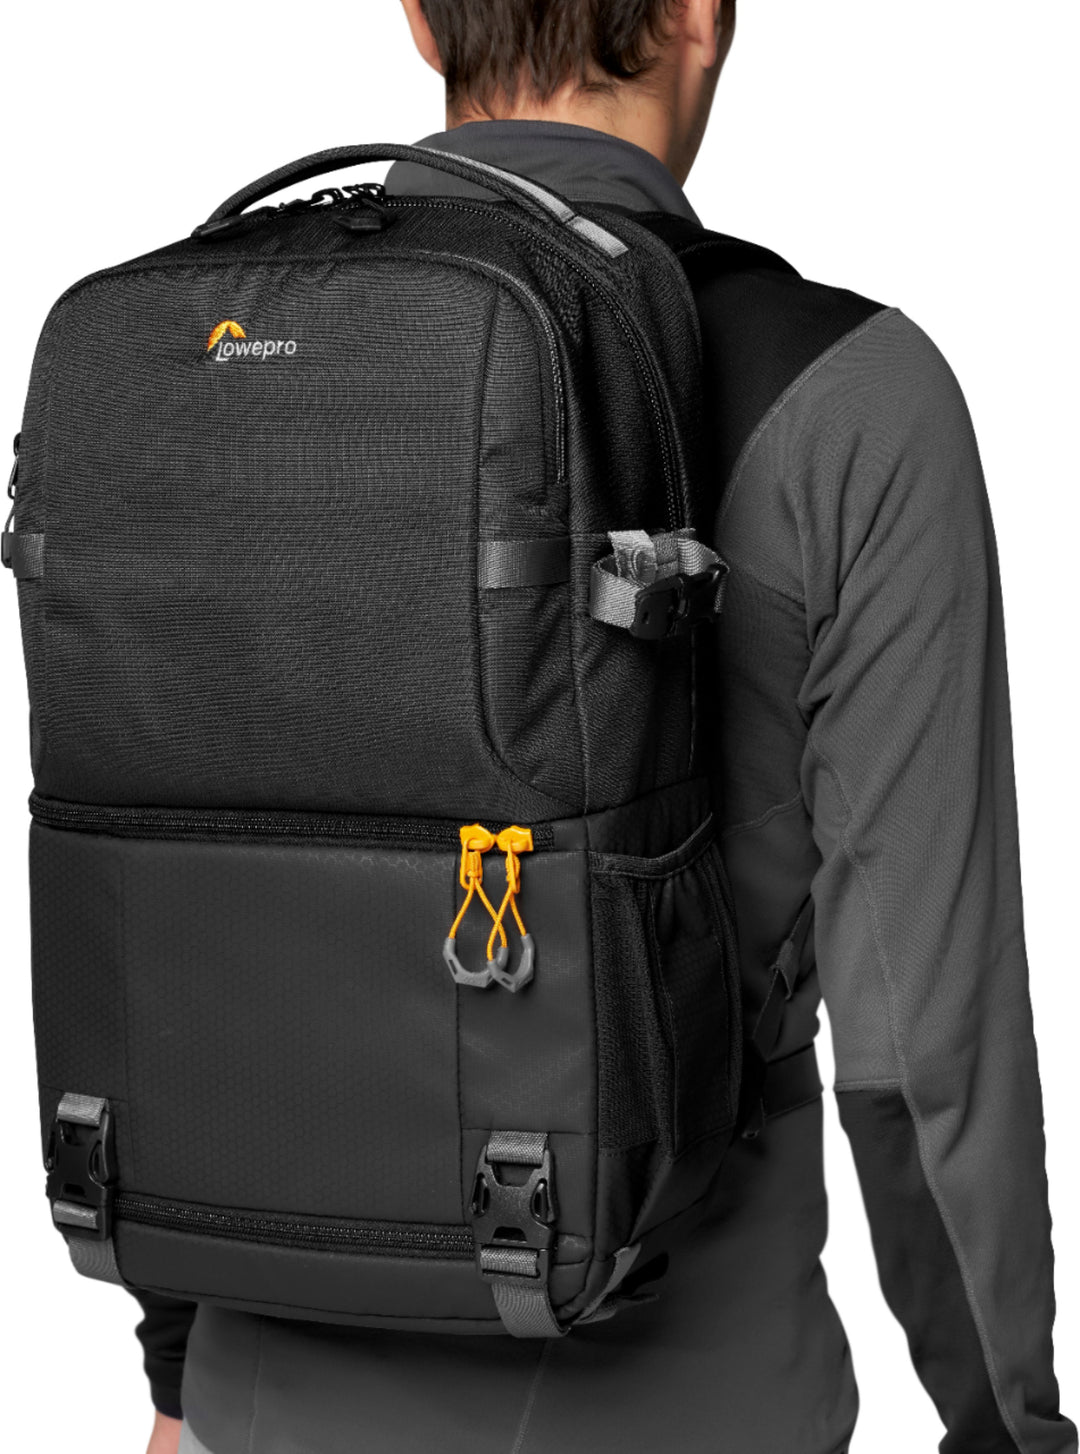 Lowepro - Fastpack Camera Backpack - Black_13